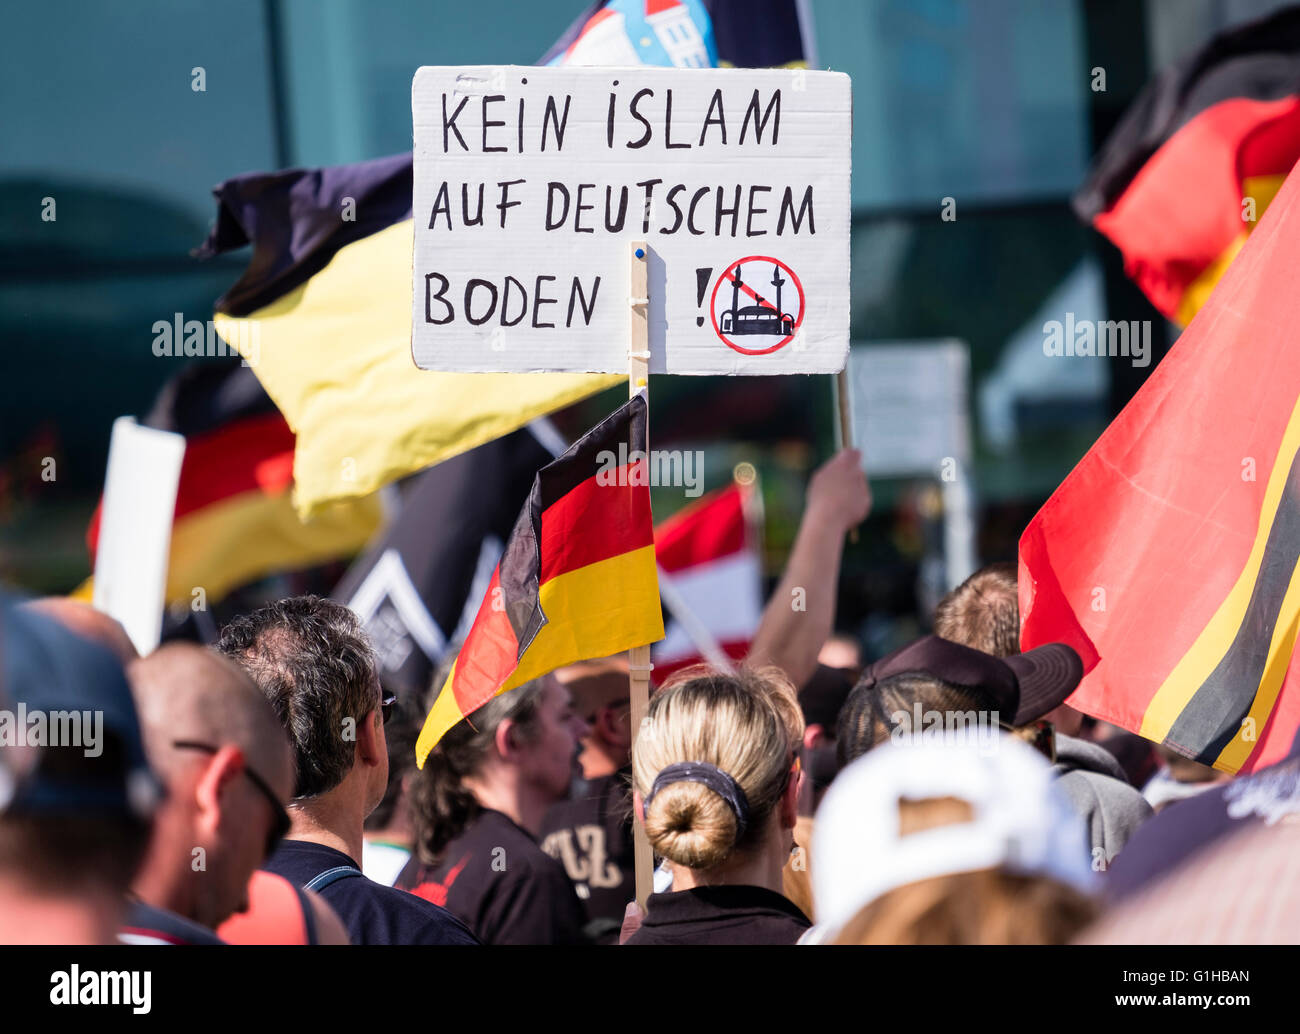 Des manifestants d'extrême-droite protester contre l'Islam, les réfugiés et Angela Merkel à Berlin. Signe dit ' pas d'Islam sur le sol allemand'. Banque D'Images